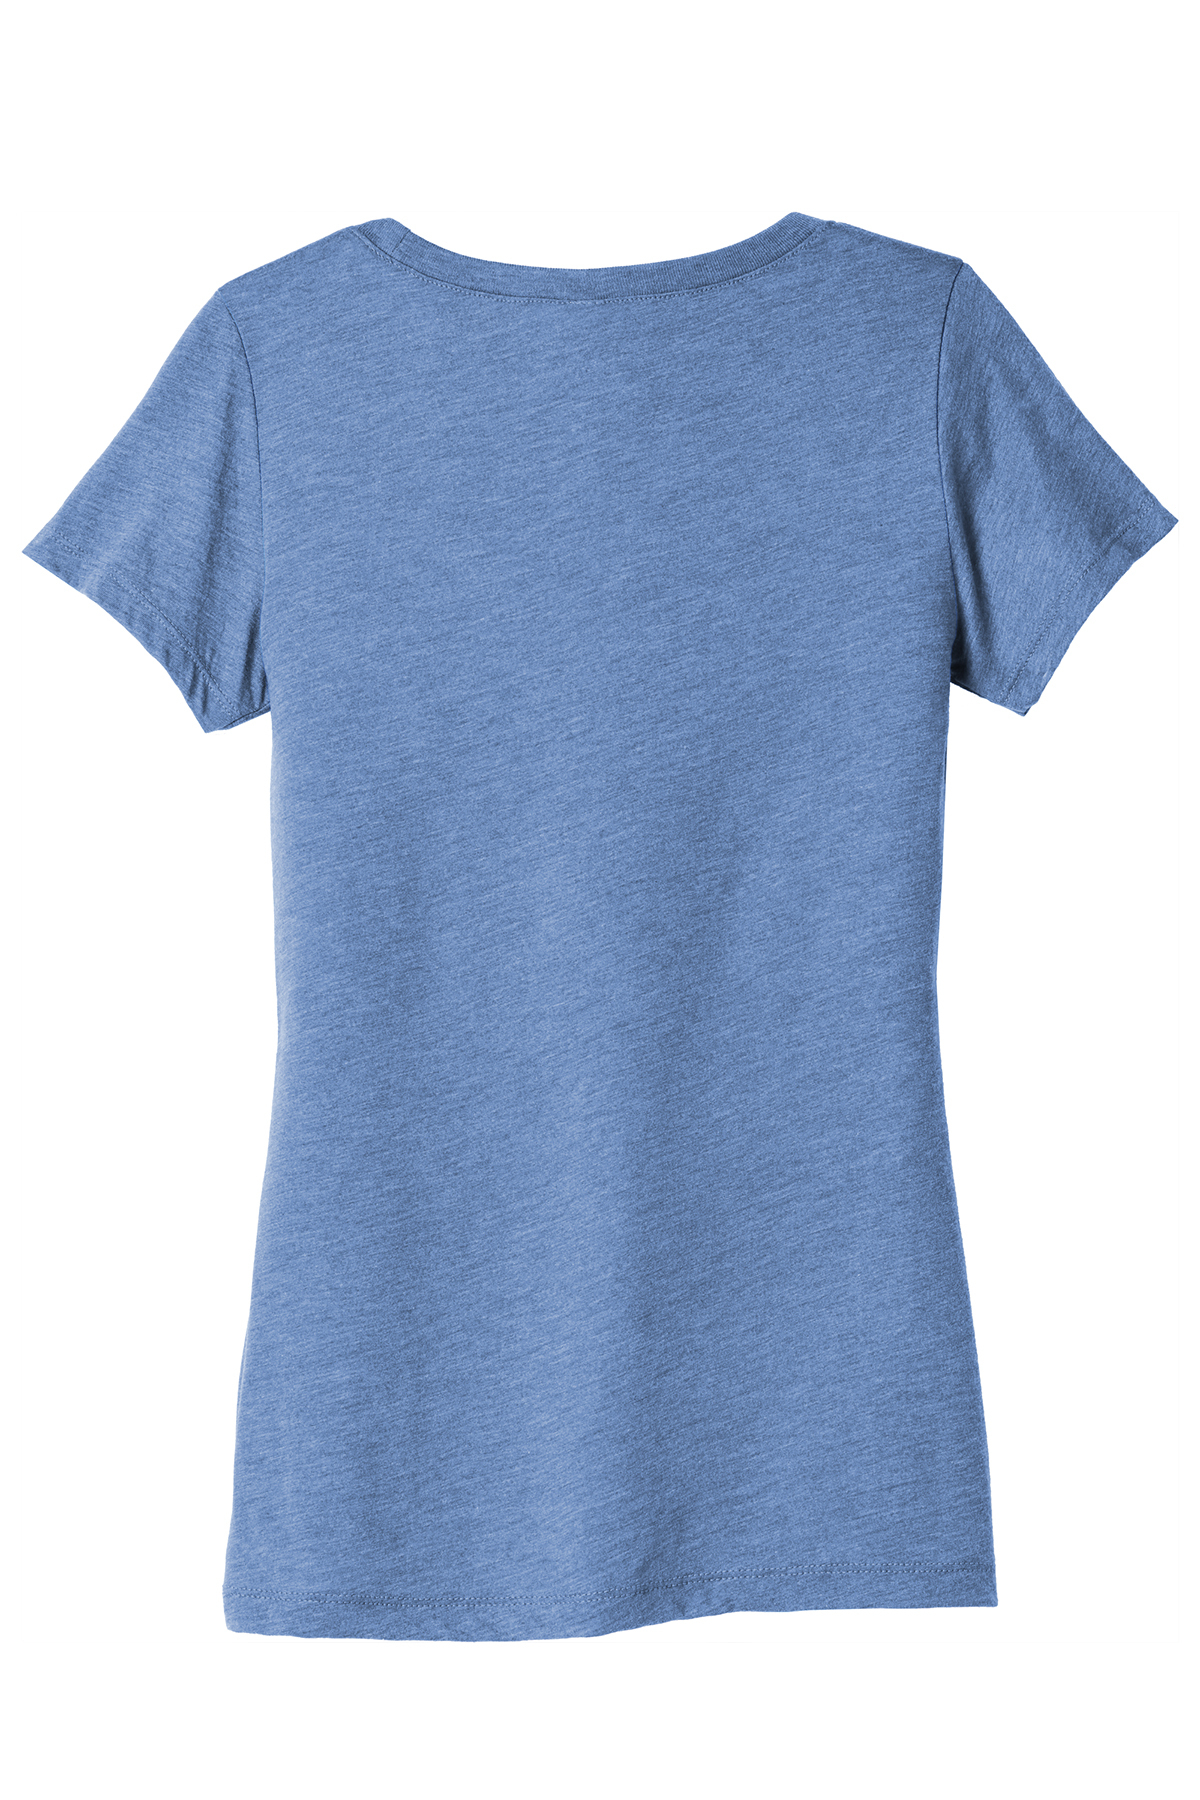 Blue Womens Premium V-Neck Tri Blend T Shirt 